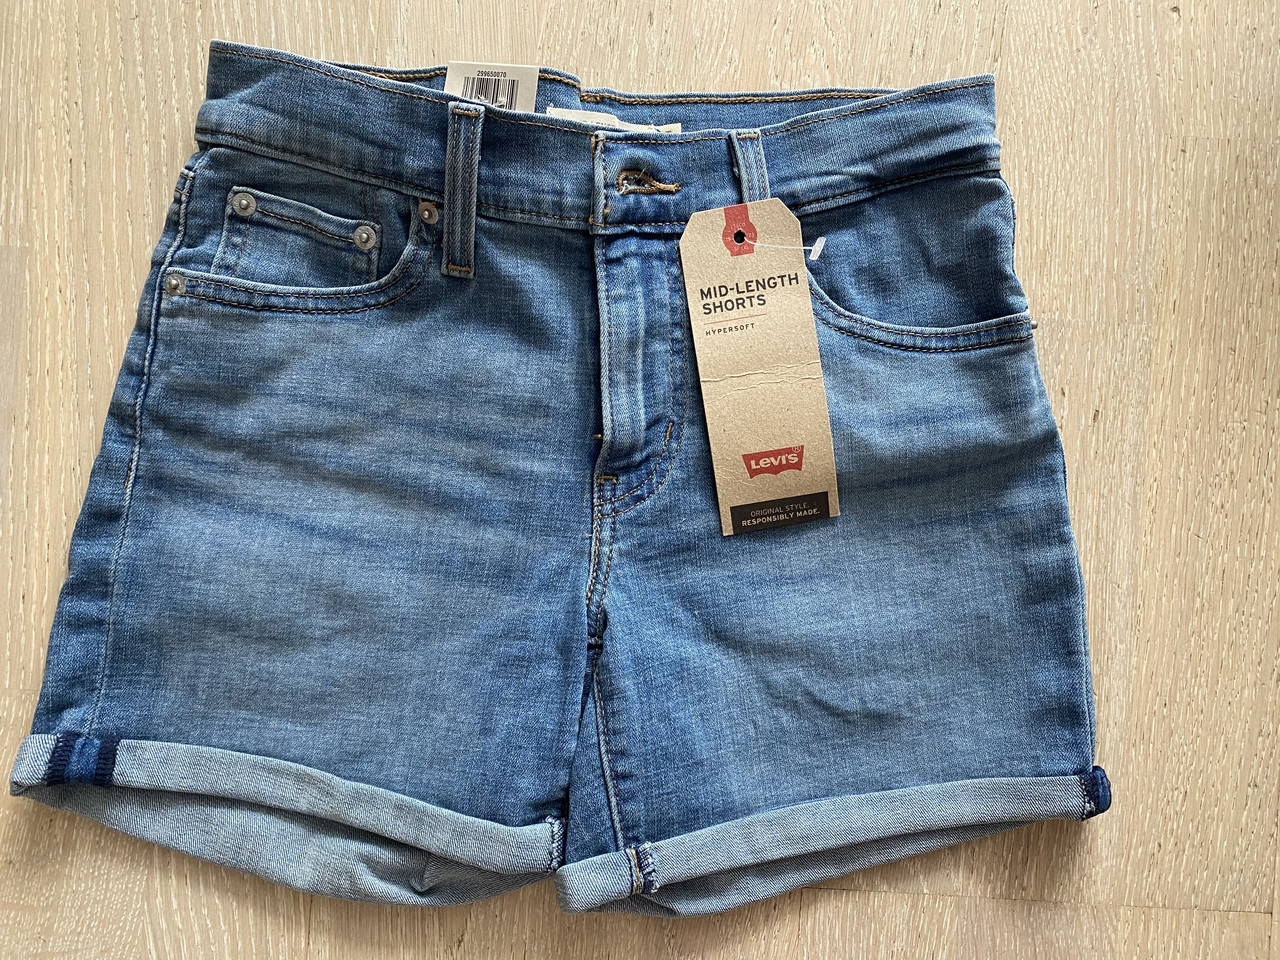 Шорты джинсовые Левайс Levi's 25 размер. Оригинал! MID-LENGTH WOMEN'S SHORTS,  цена 1150 грн —  (ID#1462821661)